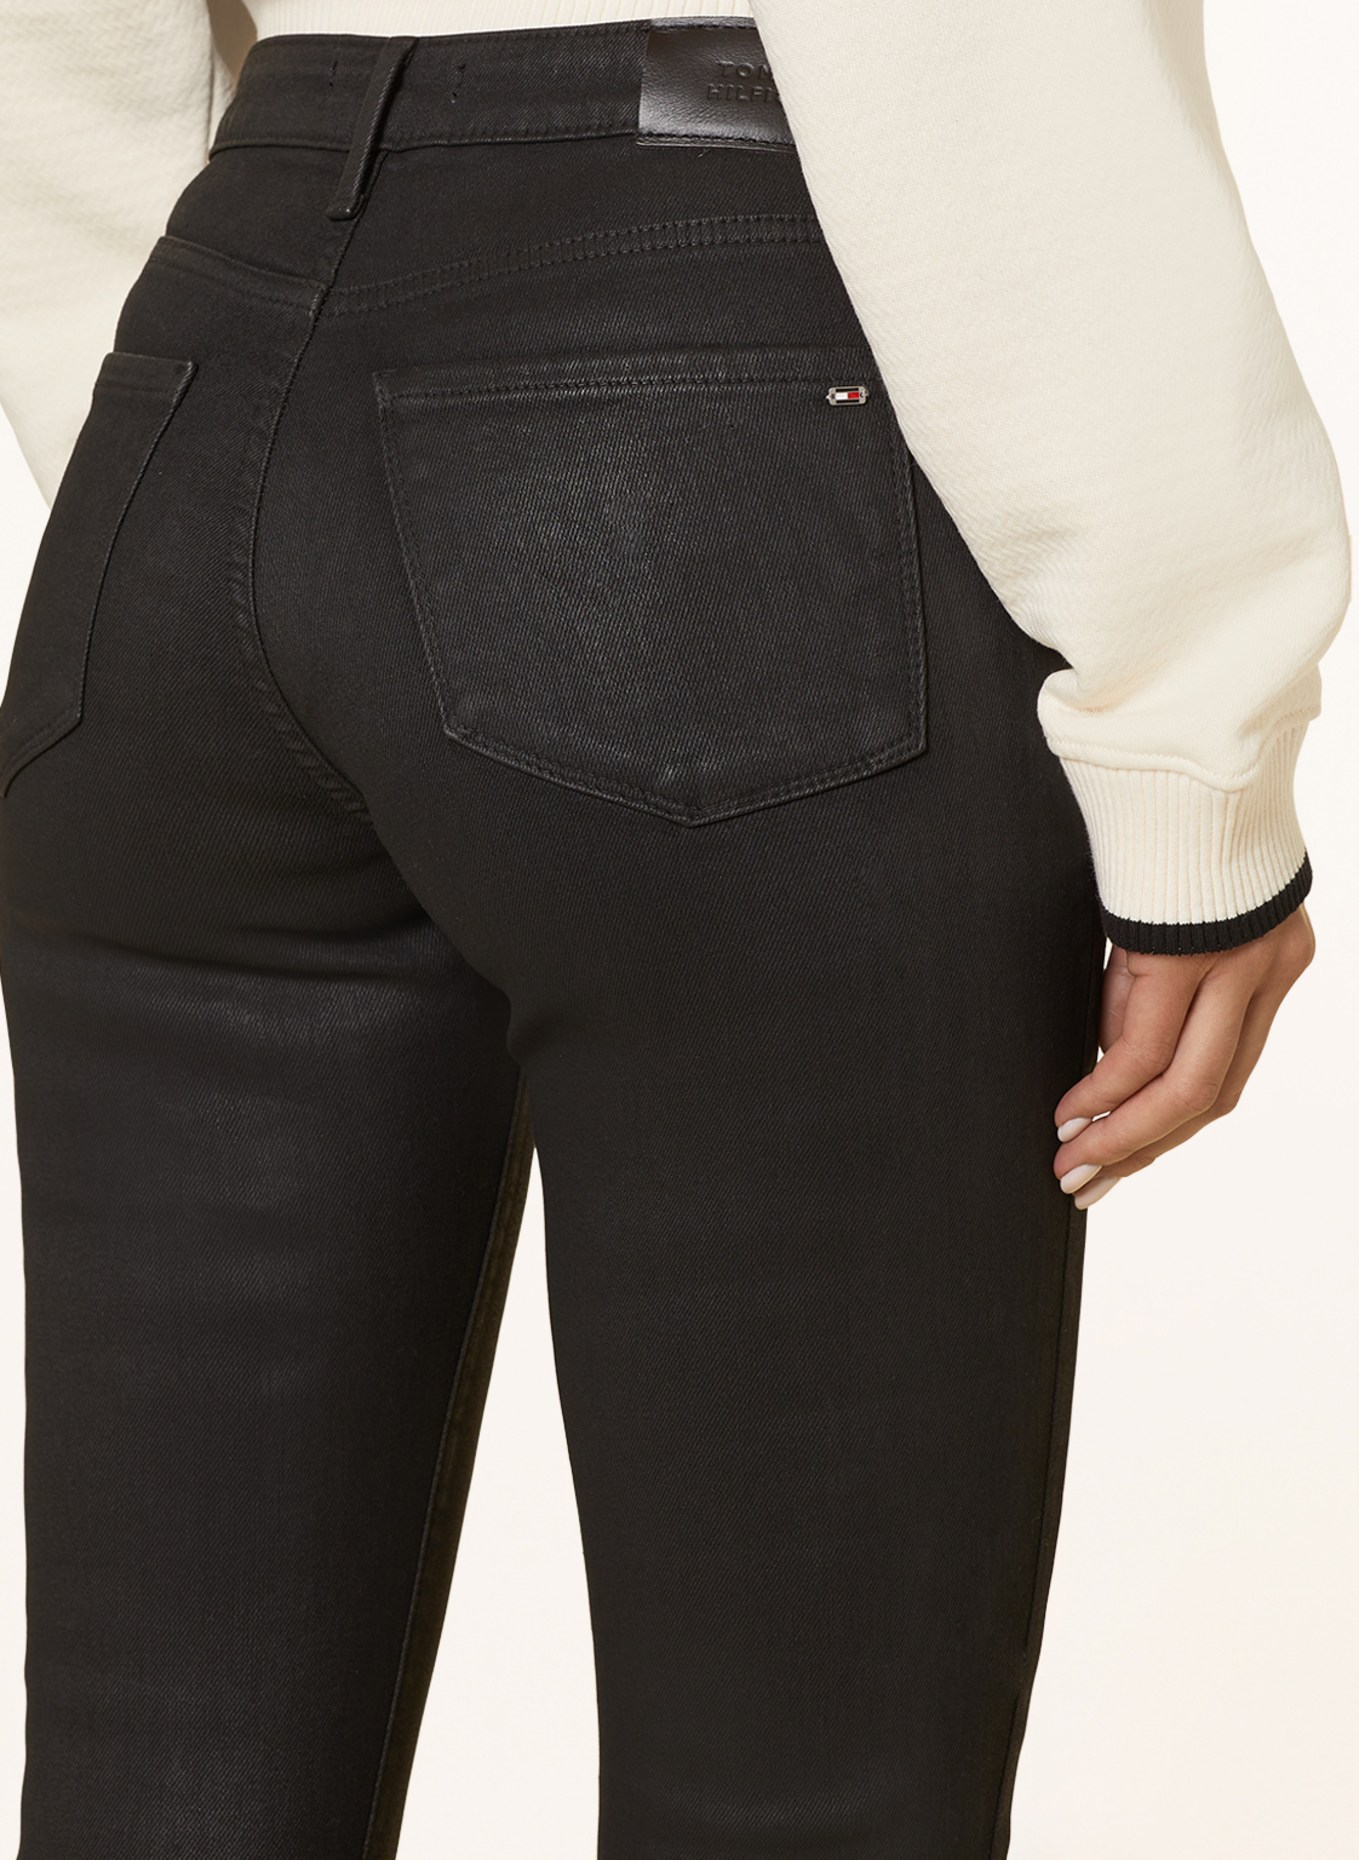 TOMMY HILFIGER Skinny Jeans COMO, Color: 1B0 Black Coated (Image 5)